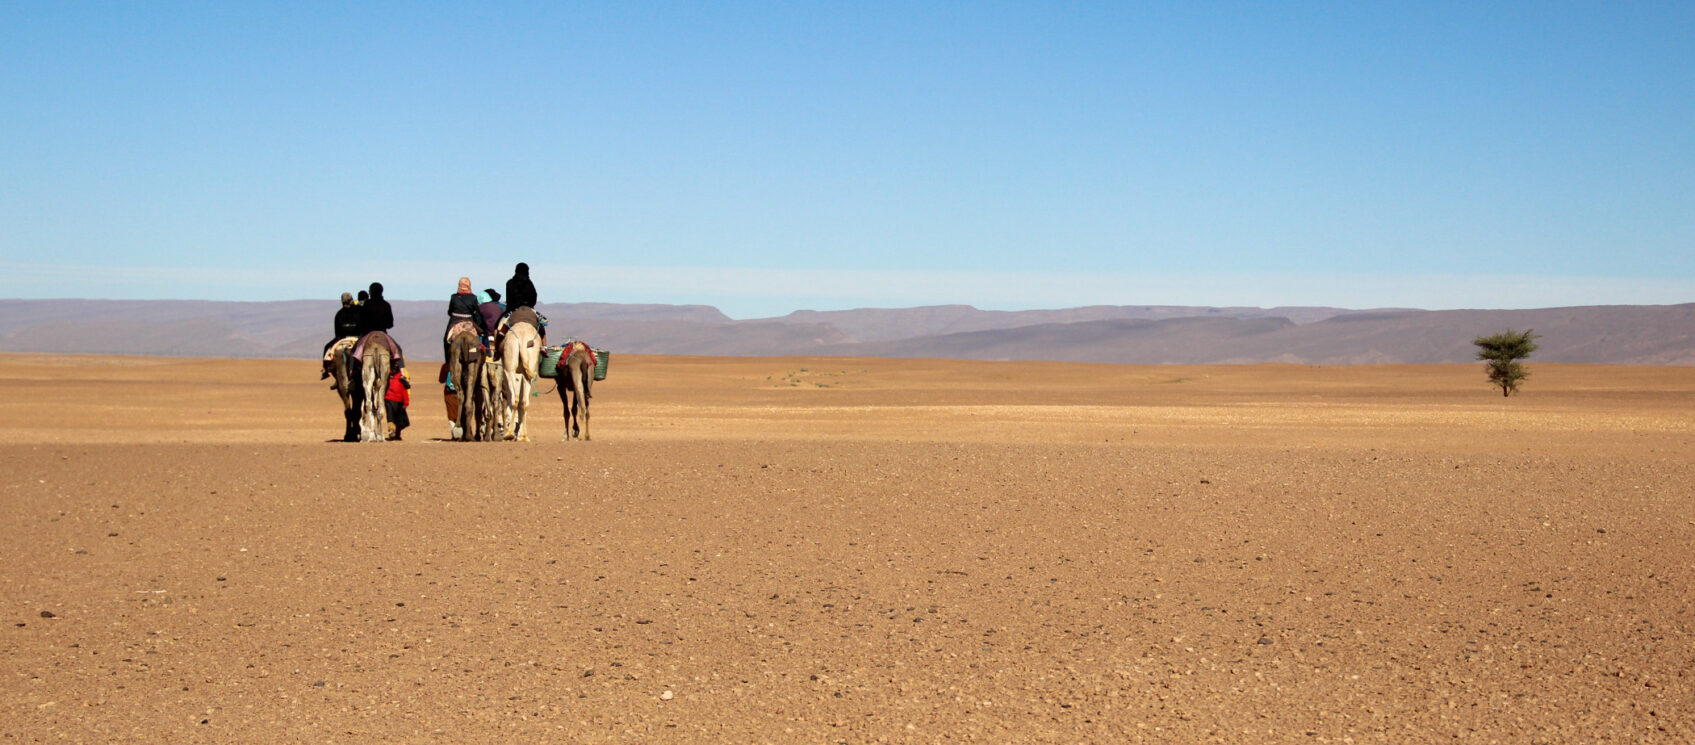 camel train in desert